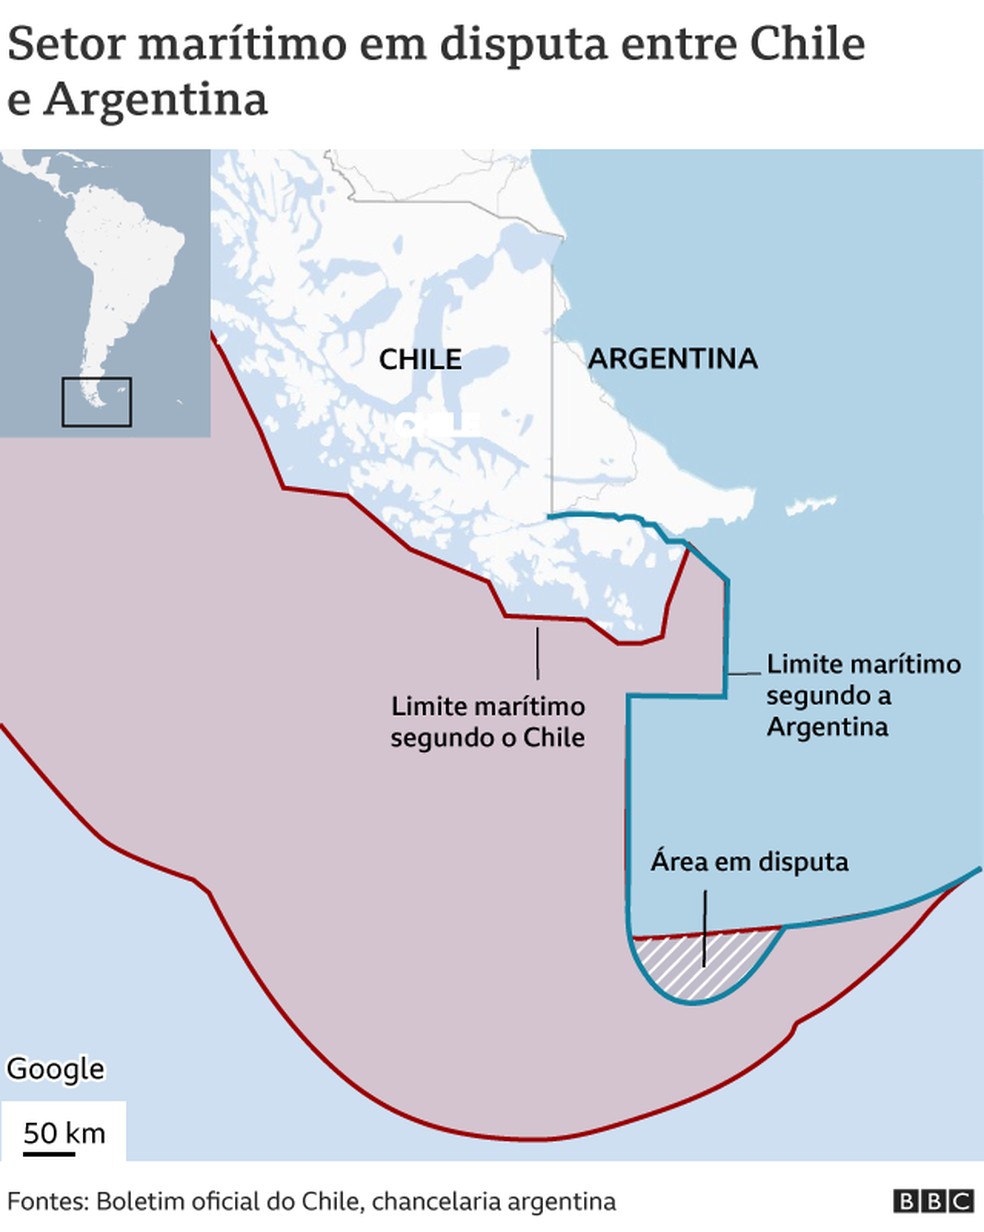 Thiago Mavá on X: Mapa da América do Sul depois da guerra entre